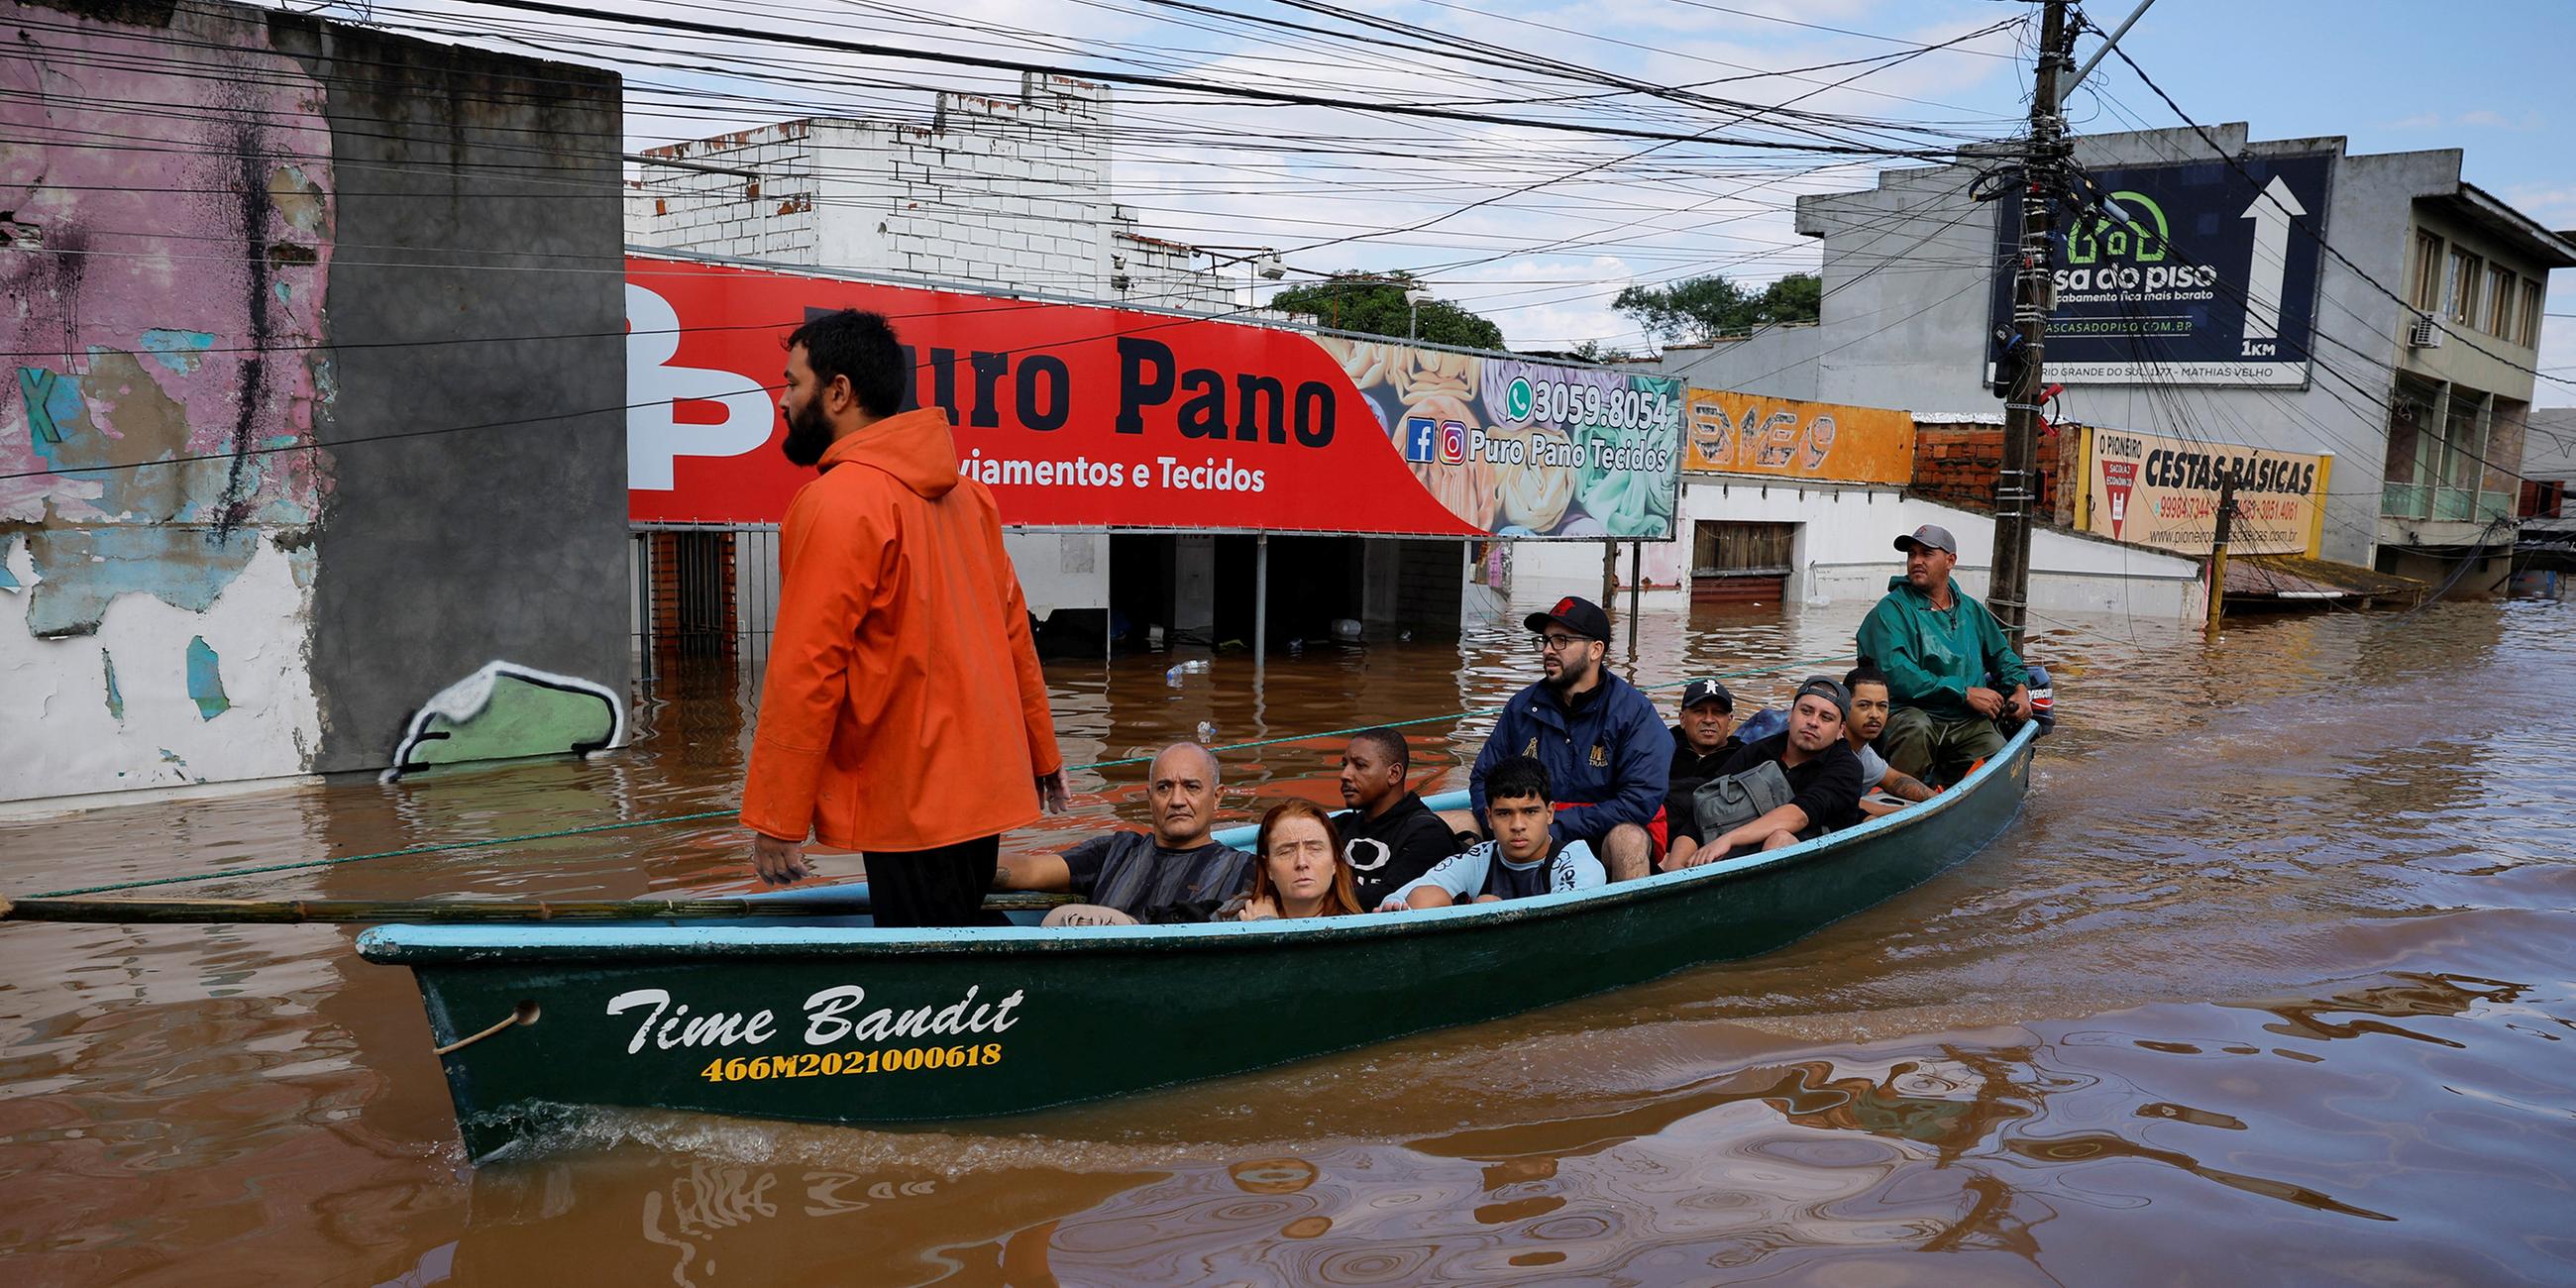 Menschen werden nach Überschwemmungen in Canoas gerettet